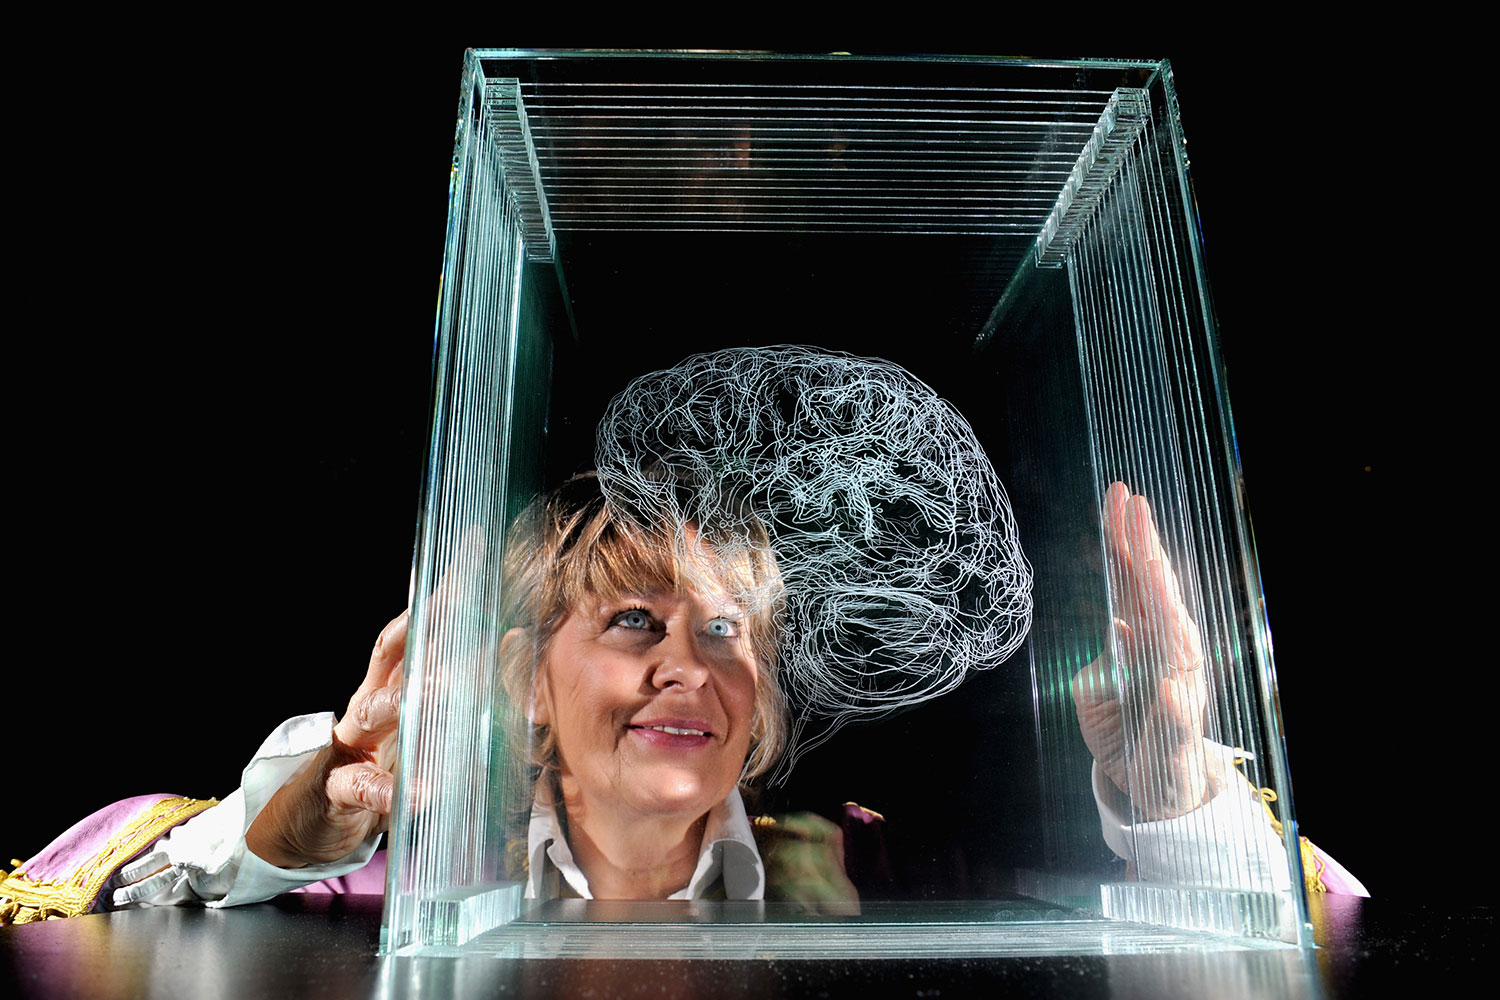 Angela Palmer inaugura "El Cerebro del Artista" en la Galería Nacional del Retrato en Escocia